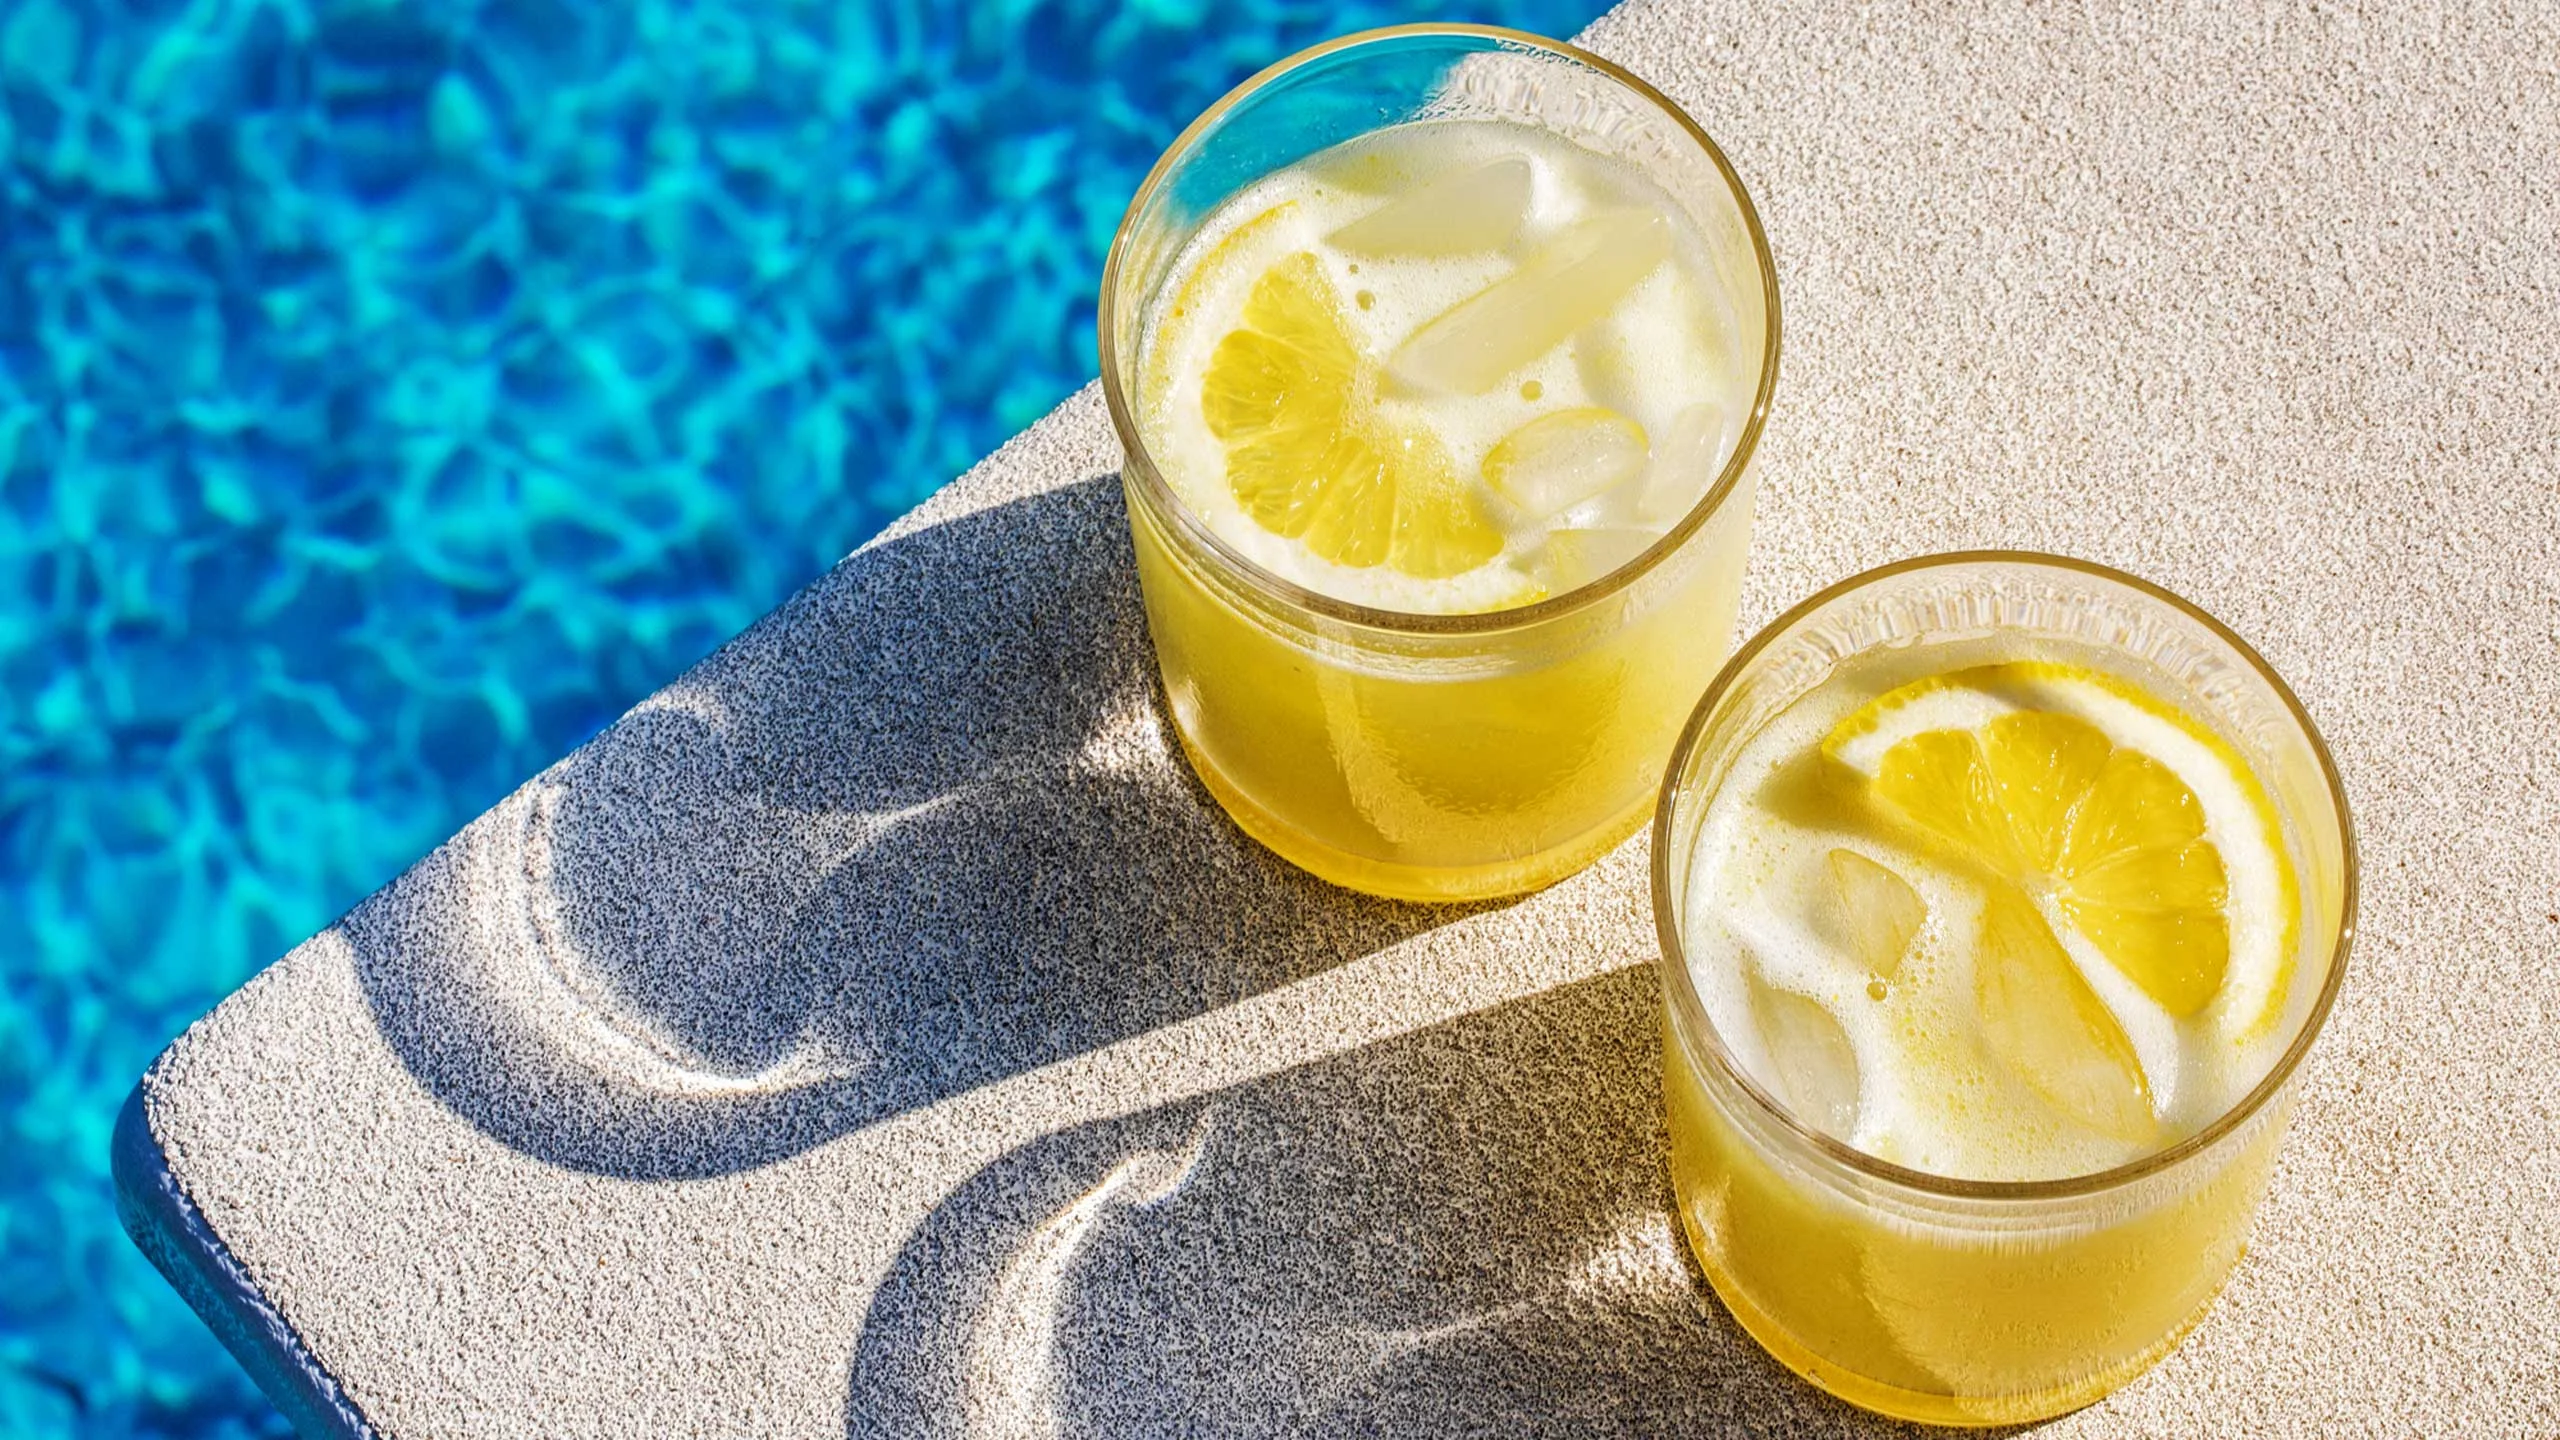 La rodaja de limón de tu coctel contribuye al cambio climático más de lo que debería